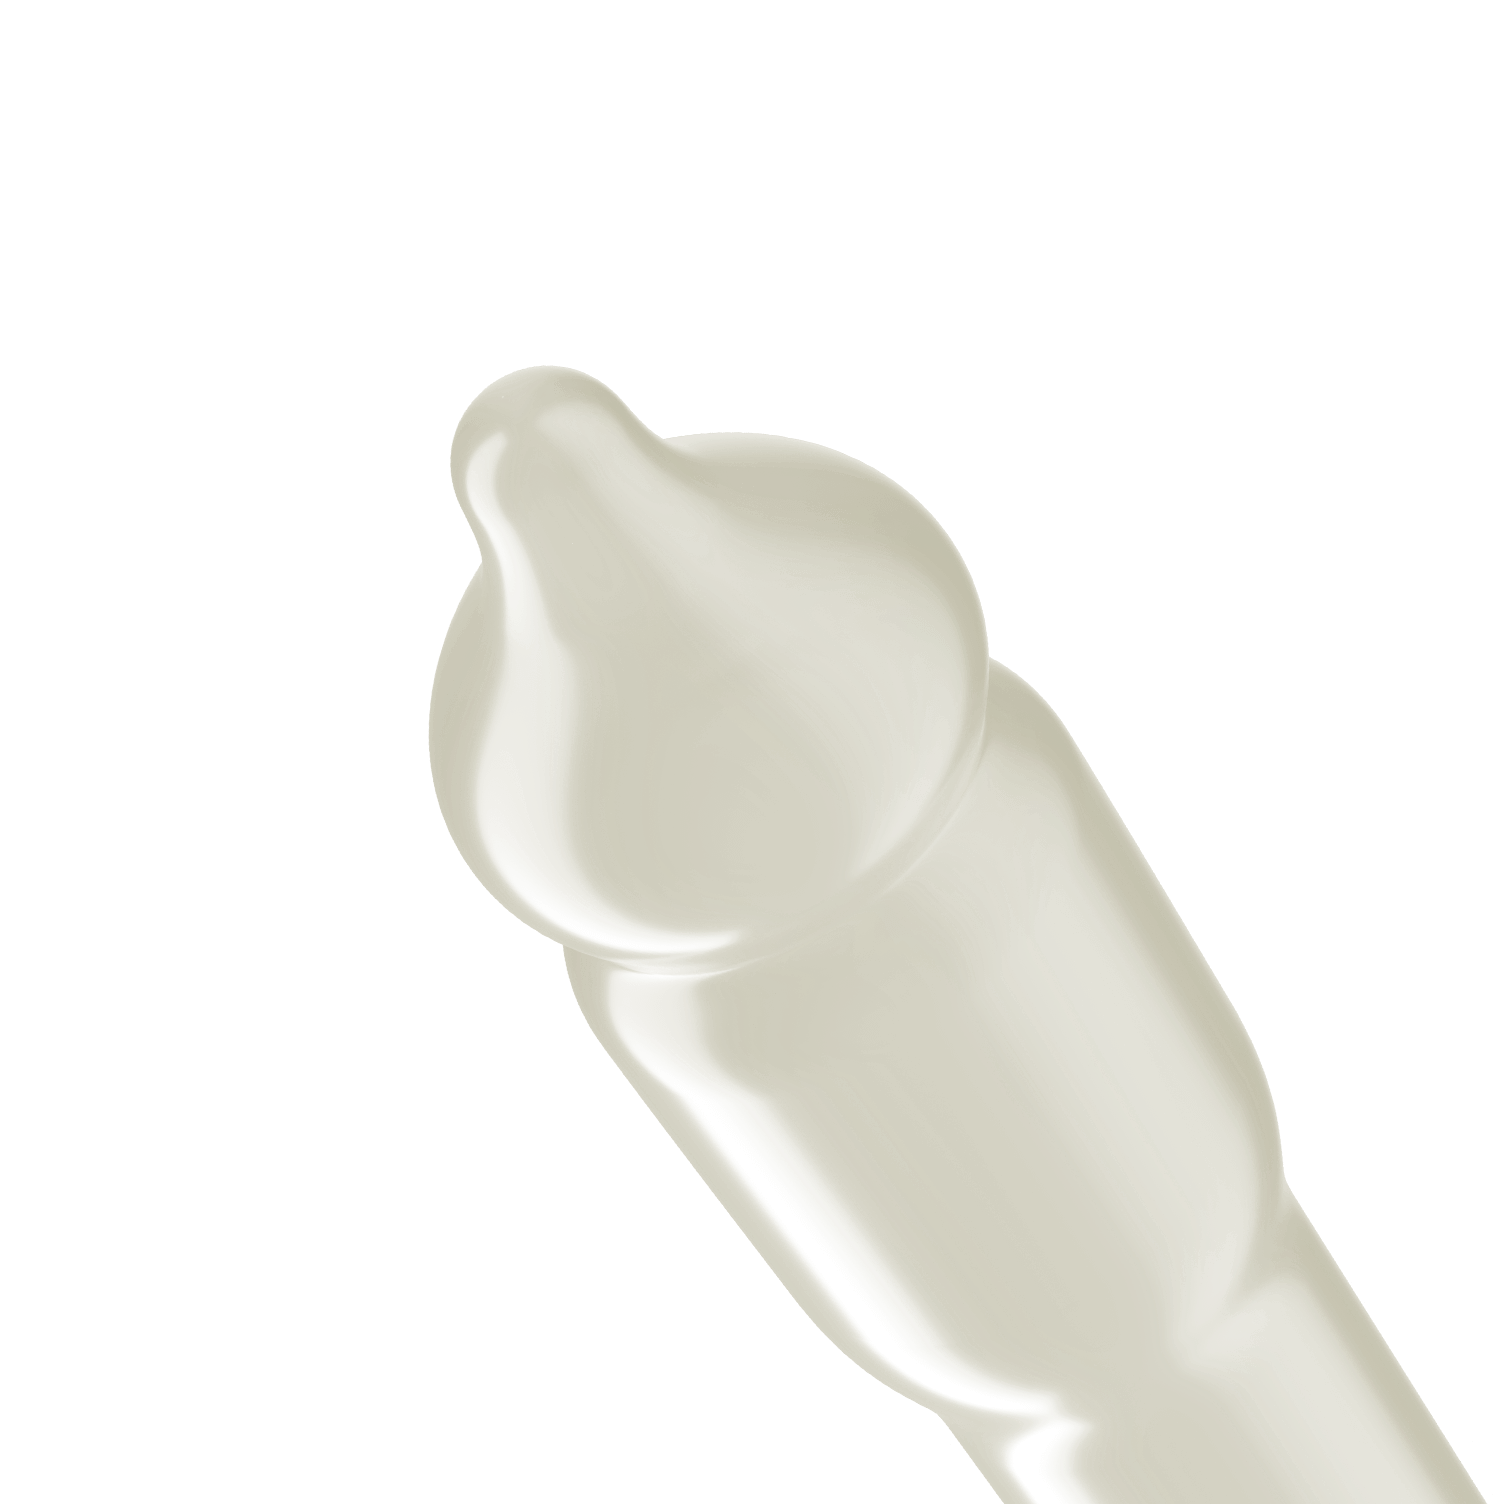 Trojan Ultra Fit Sensitive Tip Feel Condom bulbous shape tip.